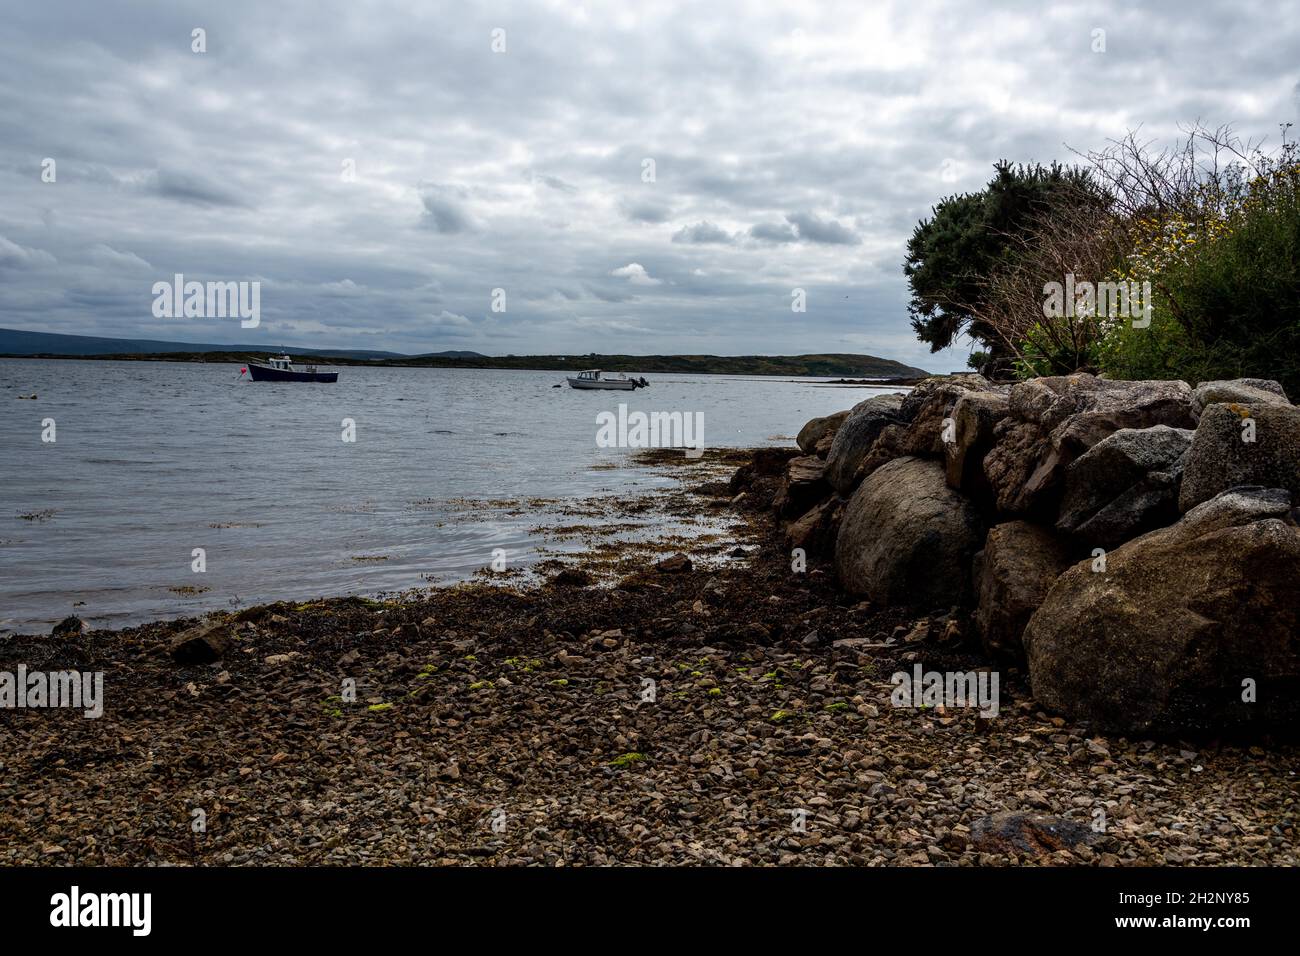 Une sélection d'images prises dans la région du Connemara du comté de Galway, les paysages d'Irlande et la voie de l'Atlantique sauvage. Banque D'Images